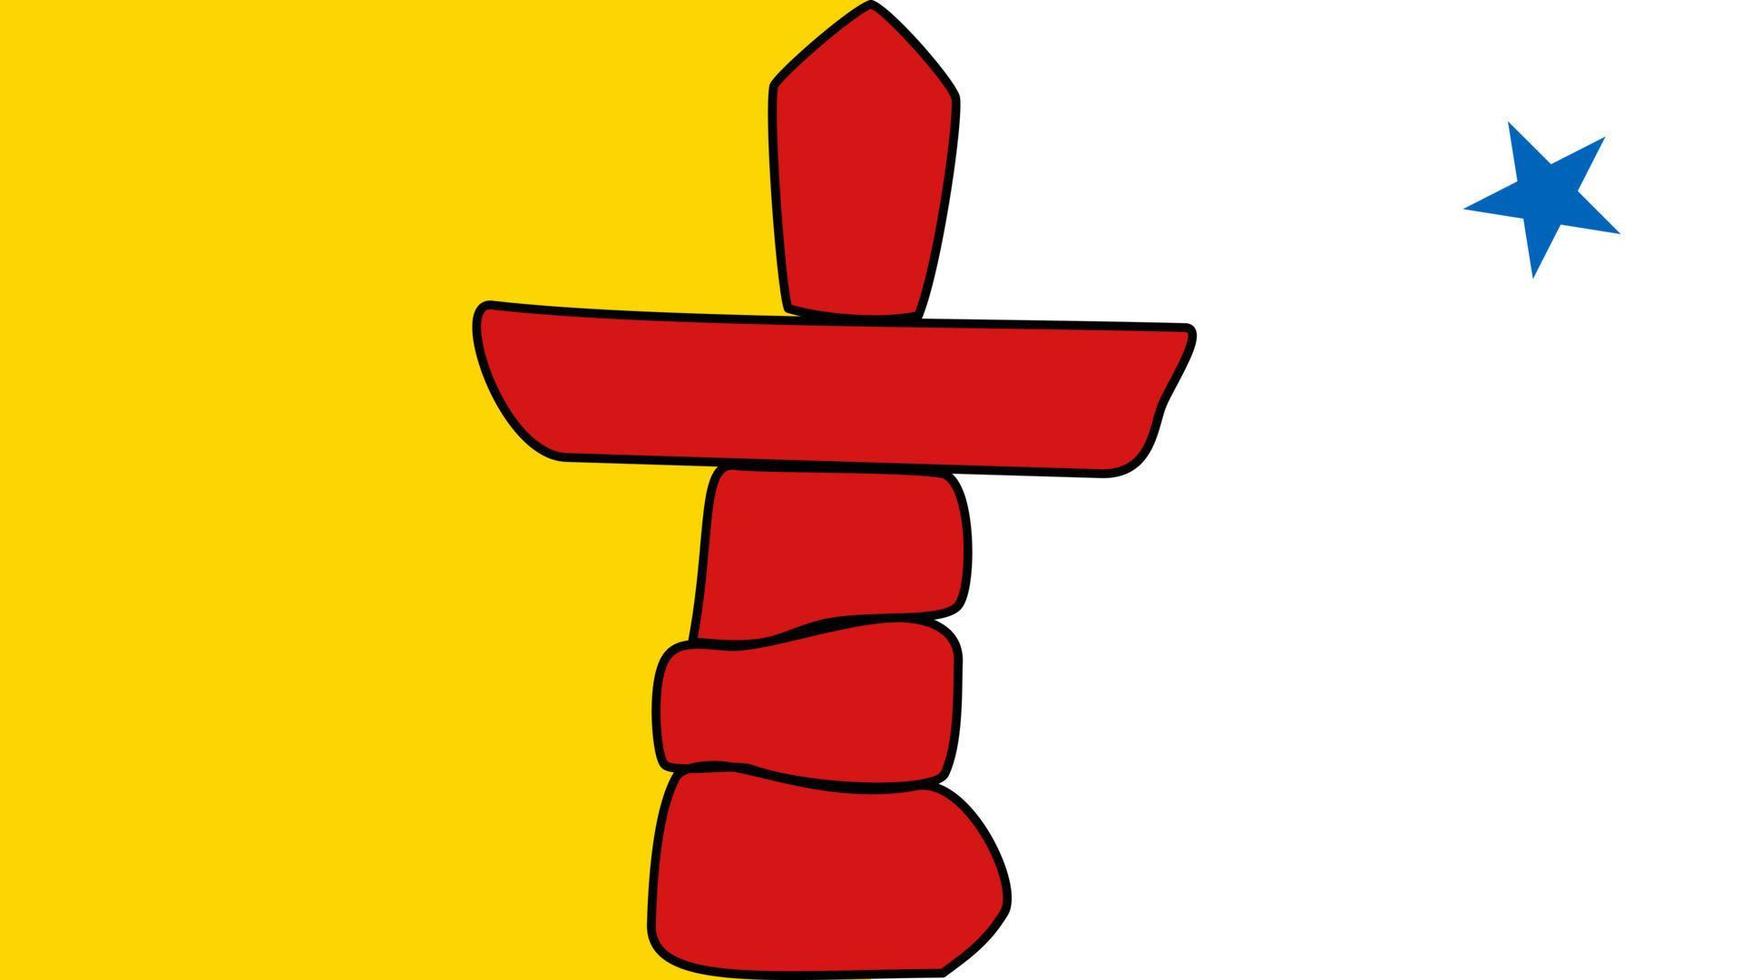 nunavut flagga, provins av Kanada. vektor illustration.